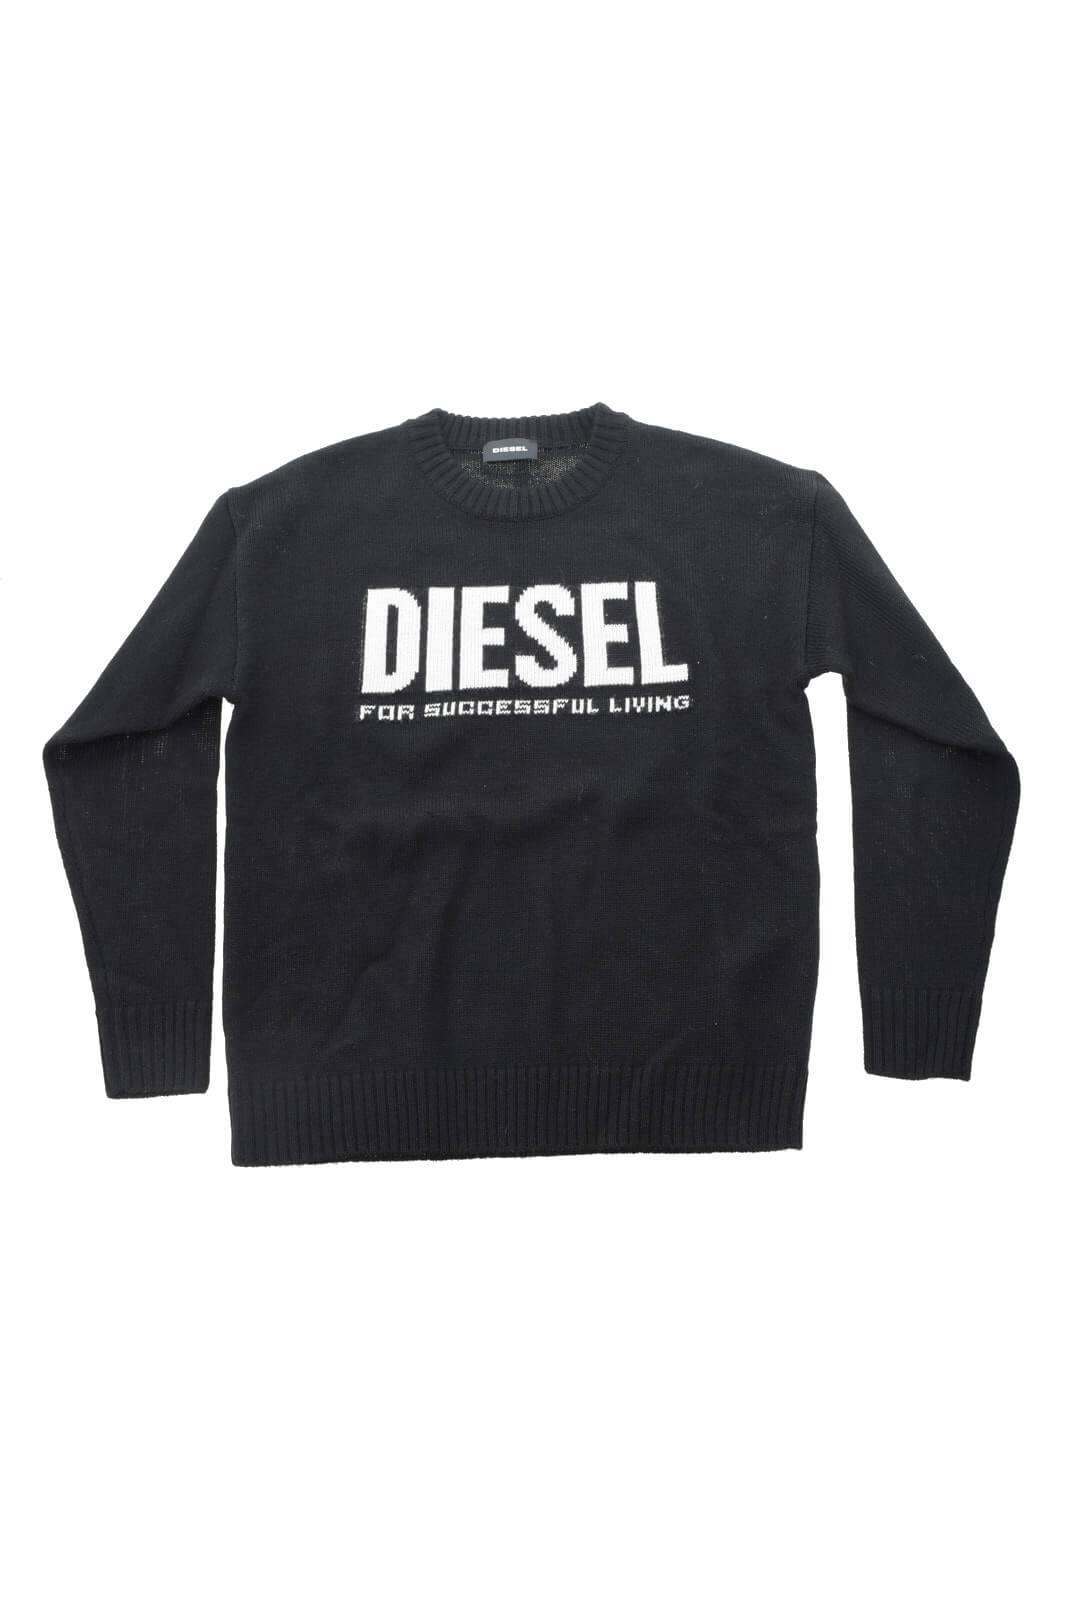 Diesel Maglia Bambino con logo